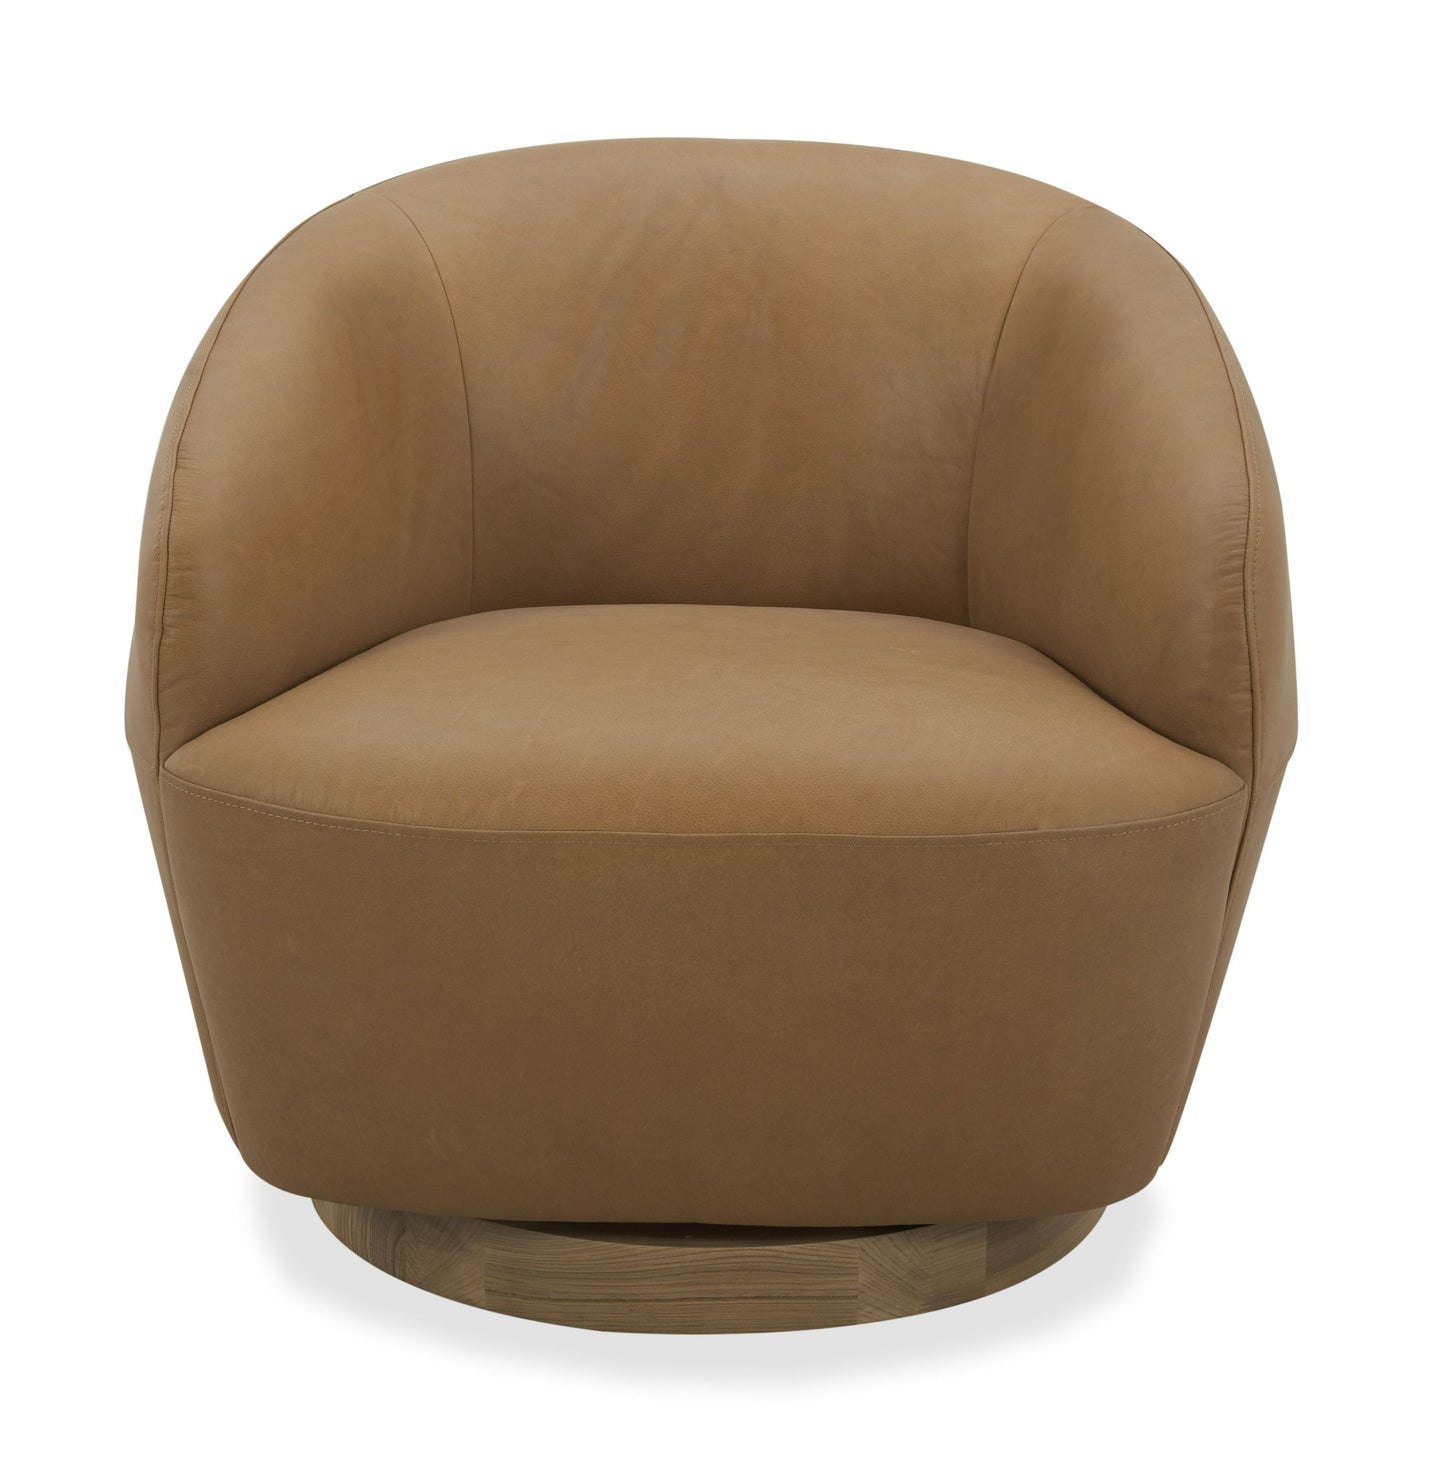 Divani Casa Agatha - Modern Tan Leather Swivel Accent Chair